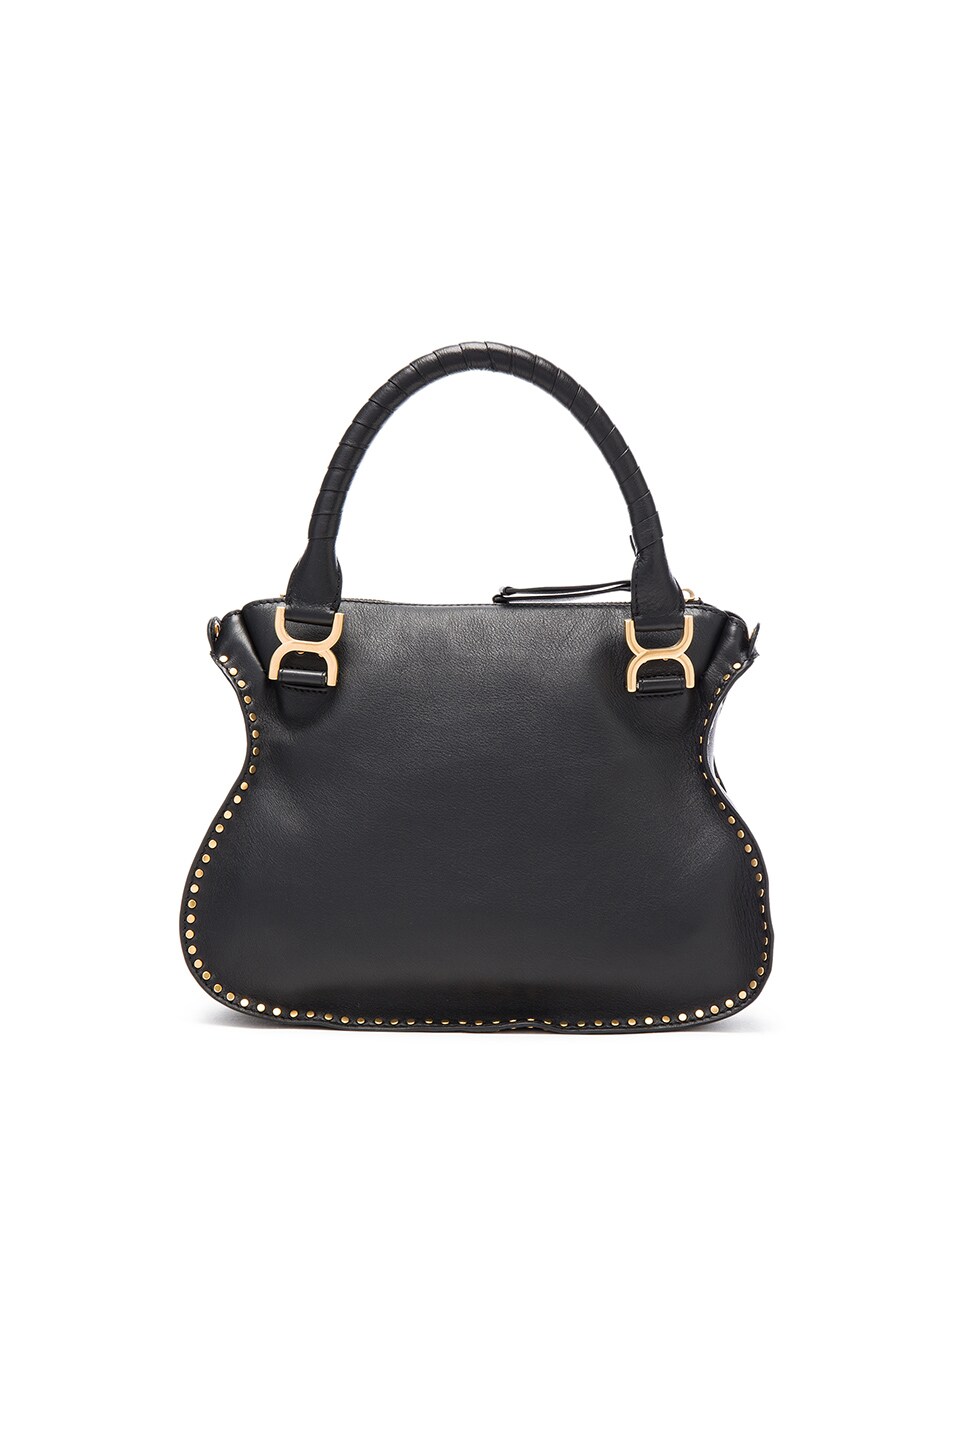 Chloe Medium Braided Leather Marci Bag in Black | FWRD